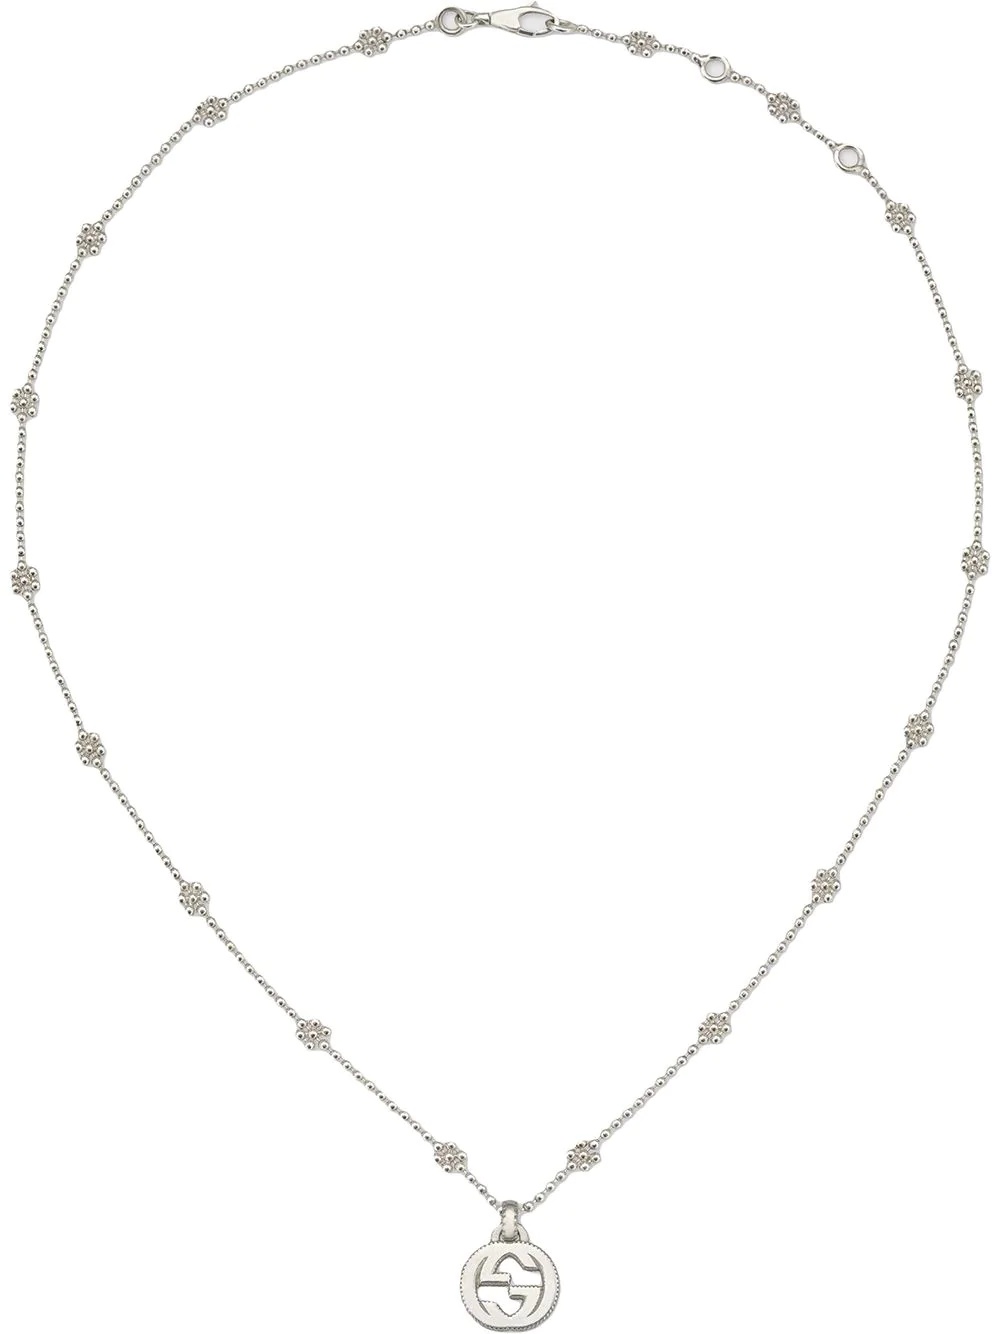 Interlocking G necklace in silver - 1